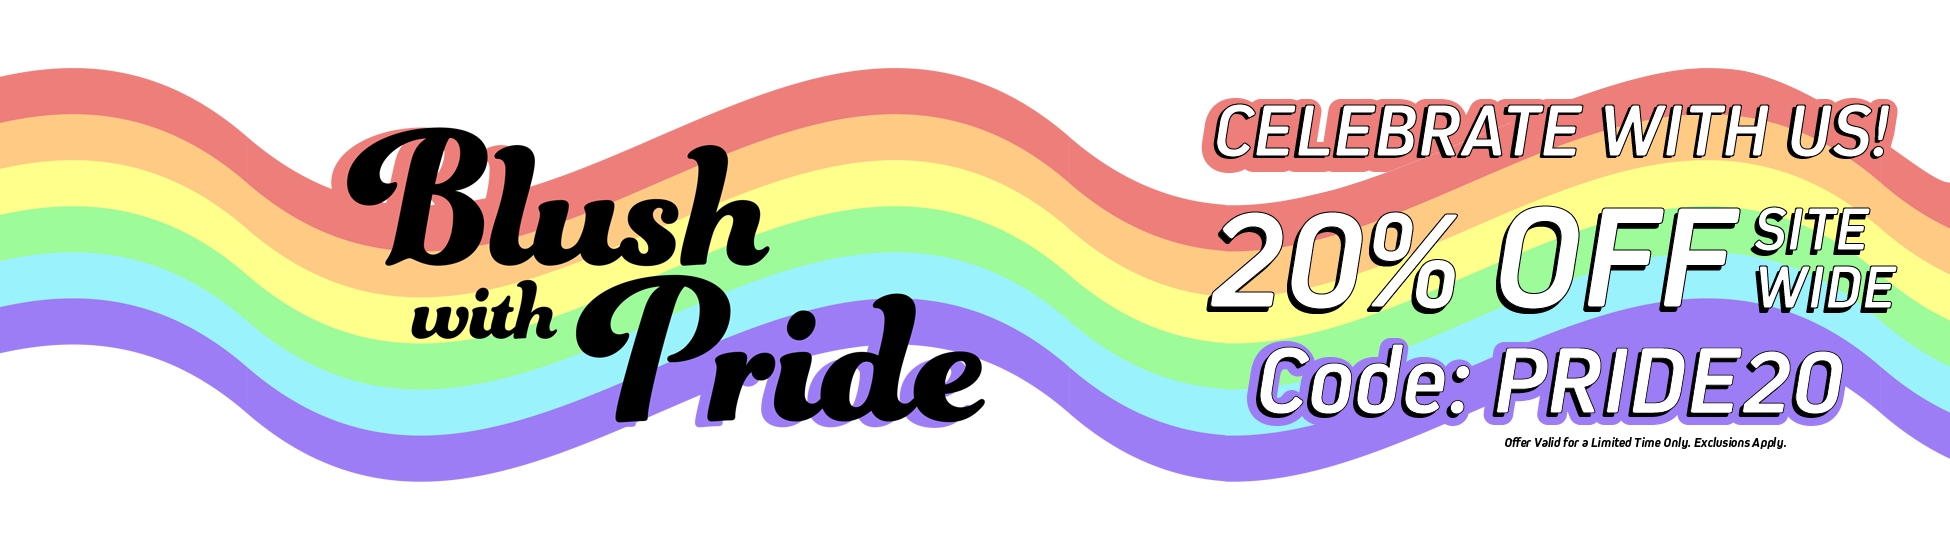 Blush_Pride_Desktop_Banner.png